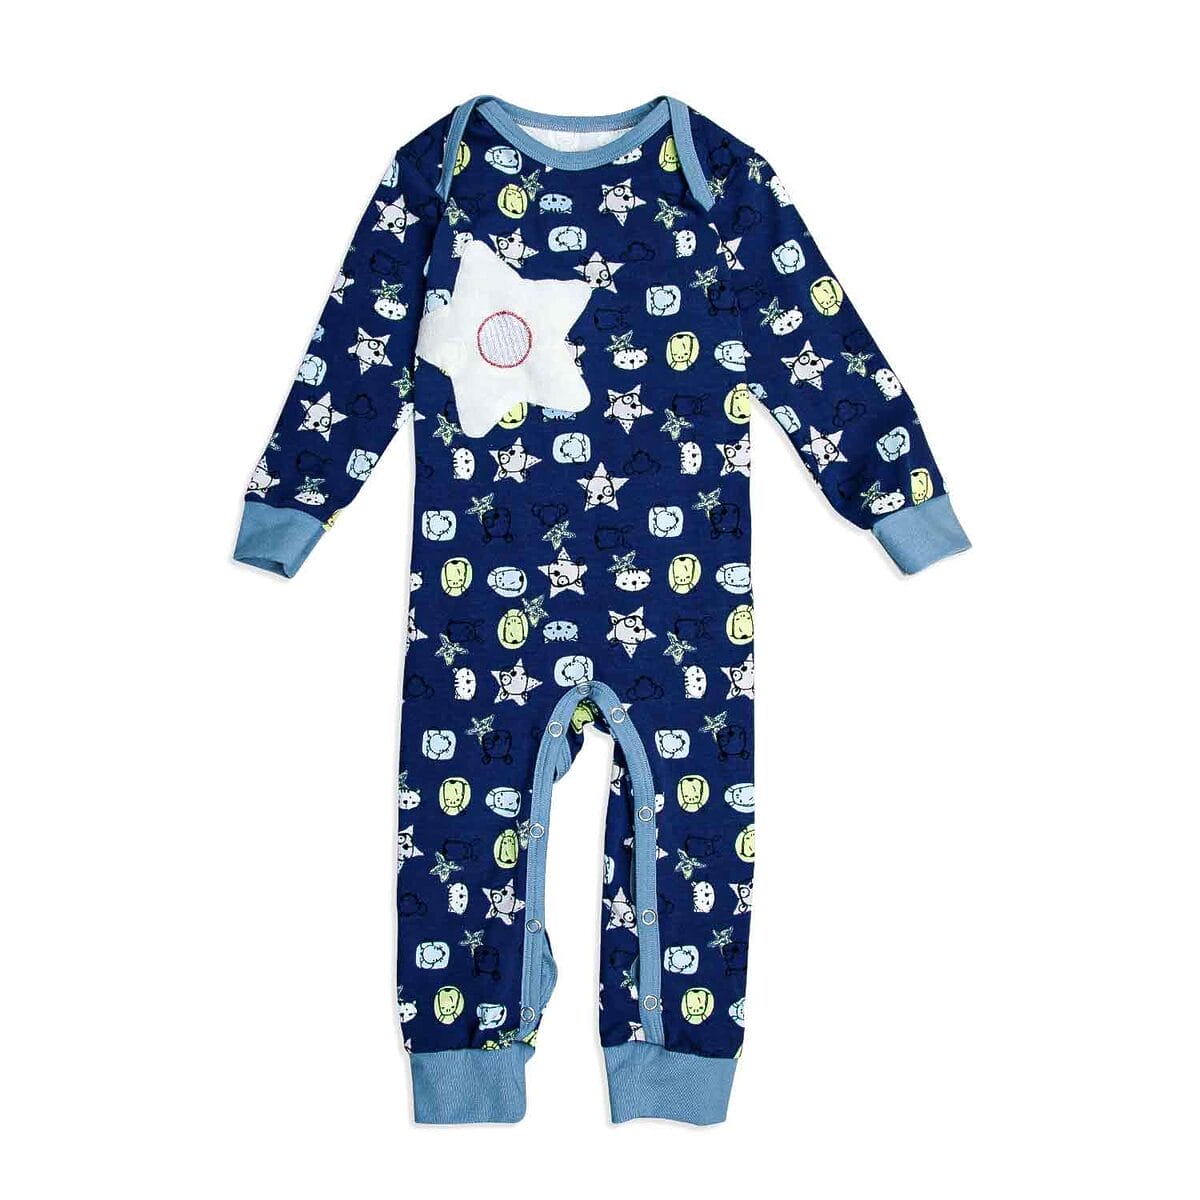 Dunkelblauer Babyschlafanzug aus Bio-Baumwolle mit lustigen Tiermotiven und praktischer Öffnung, ideal für den leichten Windelwechsel.